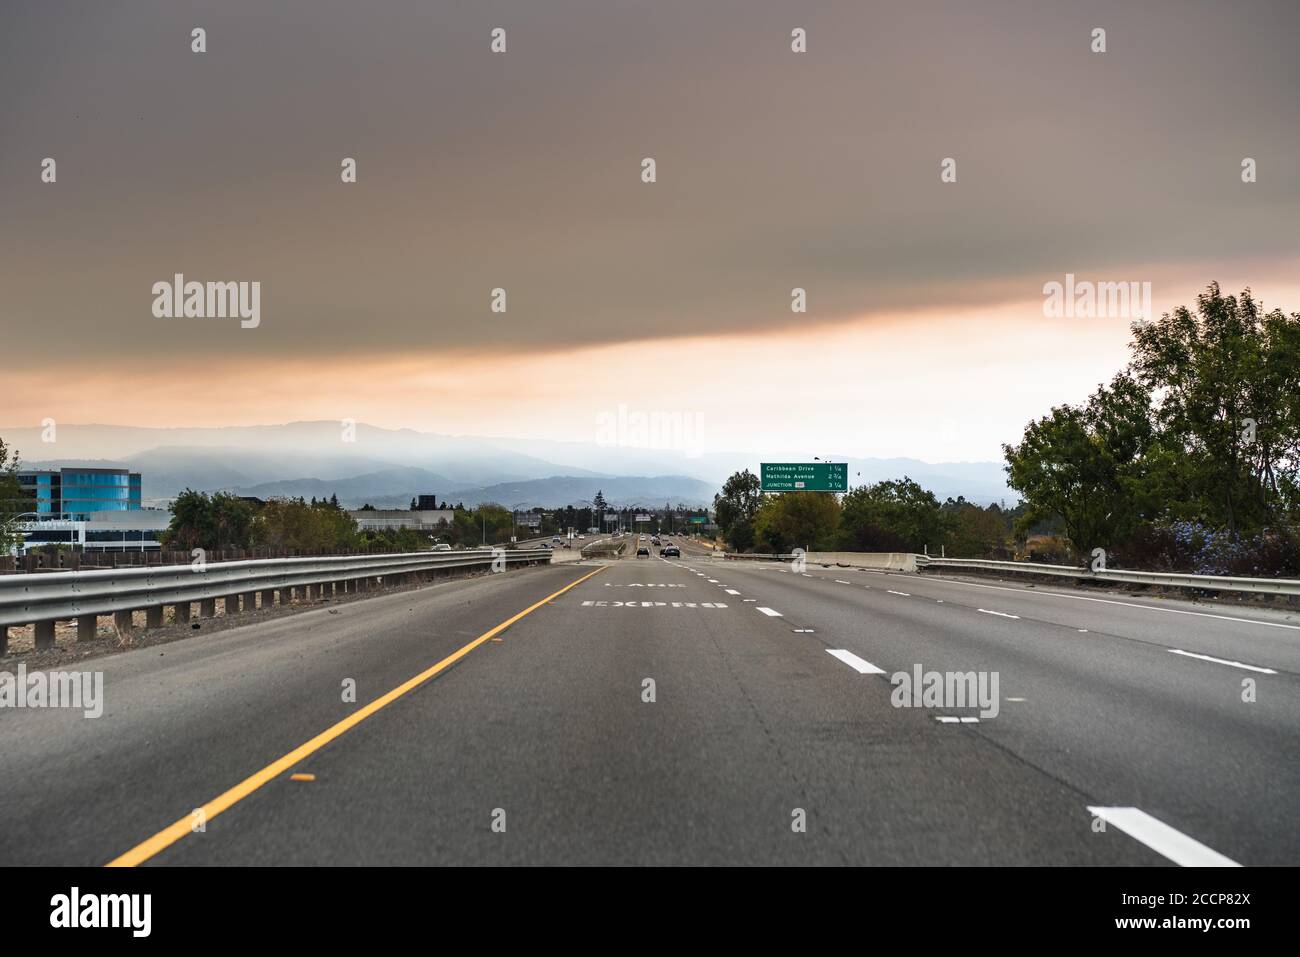 La nuvola di fumo creata dai fulmini di LNU, CZU e SCU che coprono il cielo della zona sud della baia di San Francisco e che causano una cattiva qualità dell'aria Foto Stock